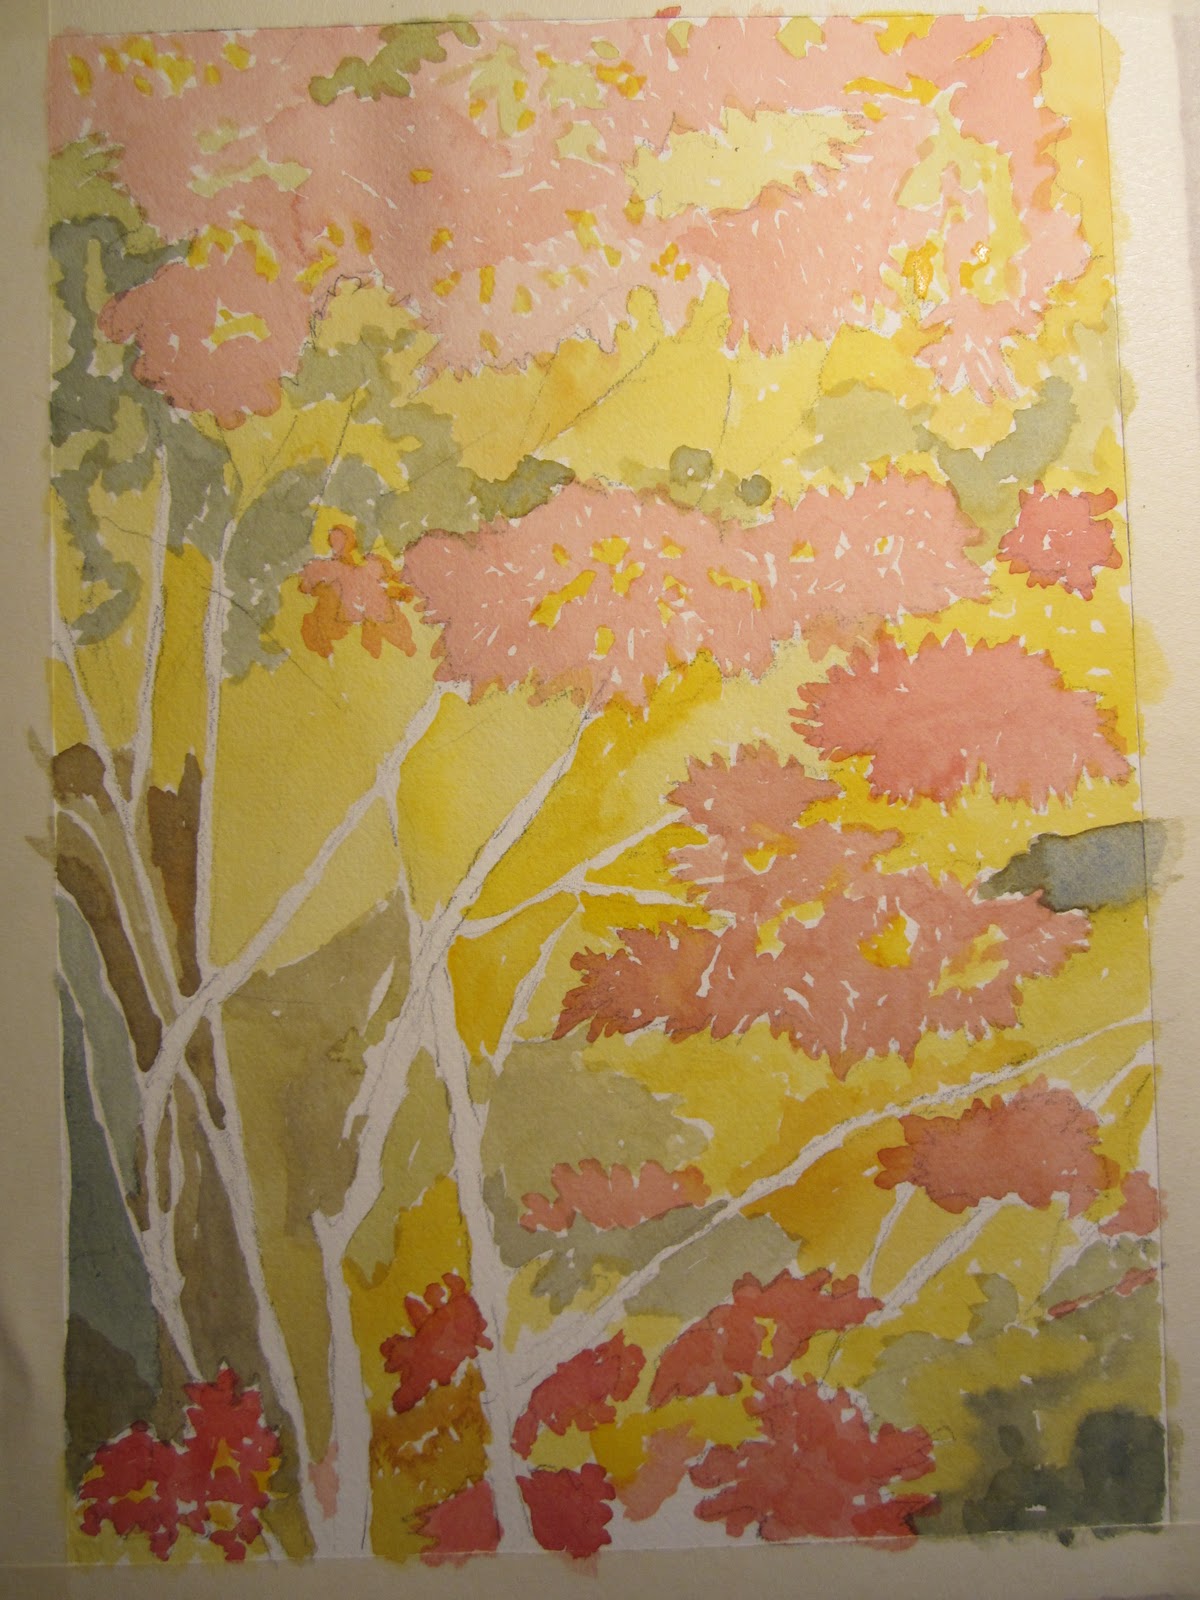 Con i tre colori primari giallo blu e rosso mescolare fino ad ottenere diverse tinte di marrone Anche per gli alberi usare la tecnica bagnato su secco